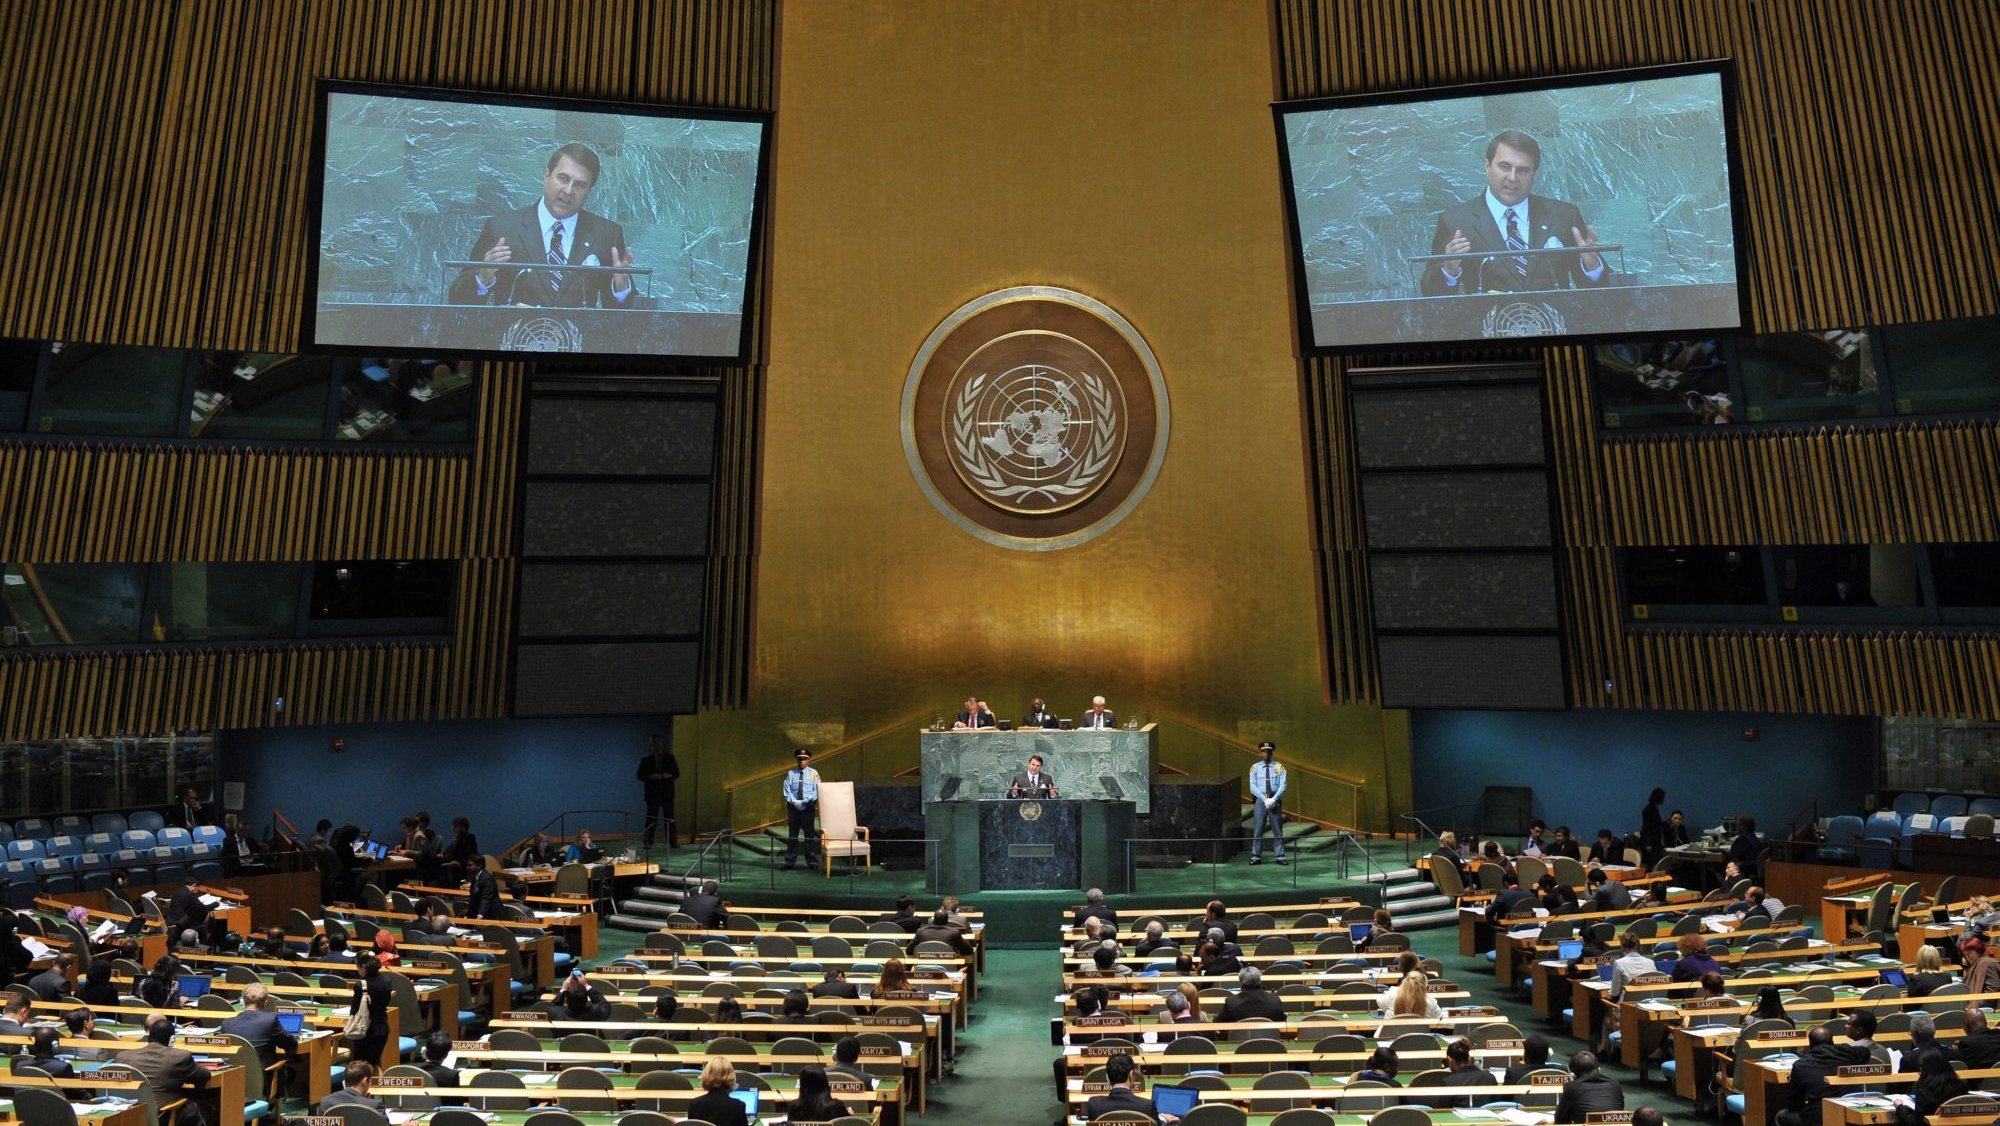 O presidente do Paraguai numa sessão na Assembleia Geral das Nações Unidas, na sede em Nova Iorque,. 27 de setembro de 2012